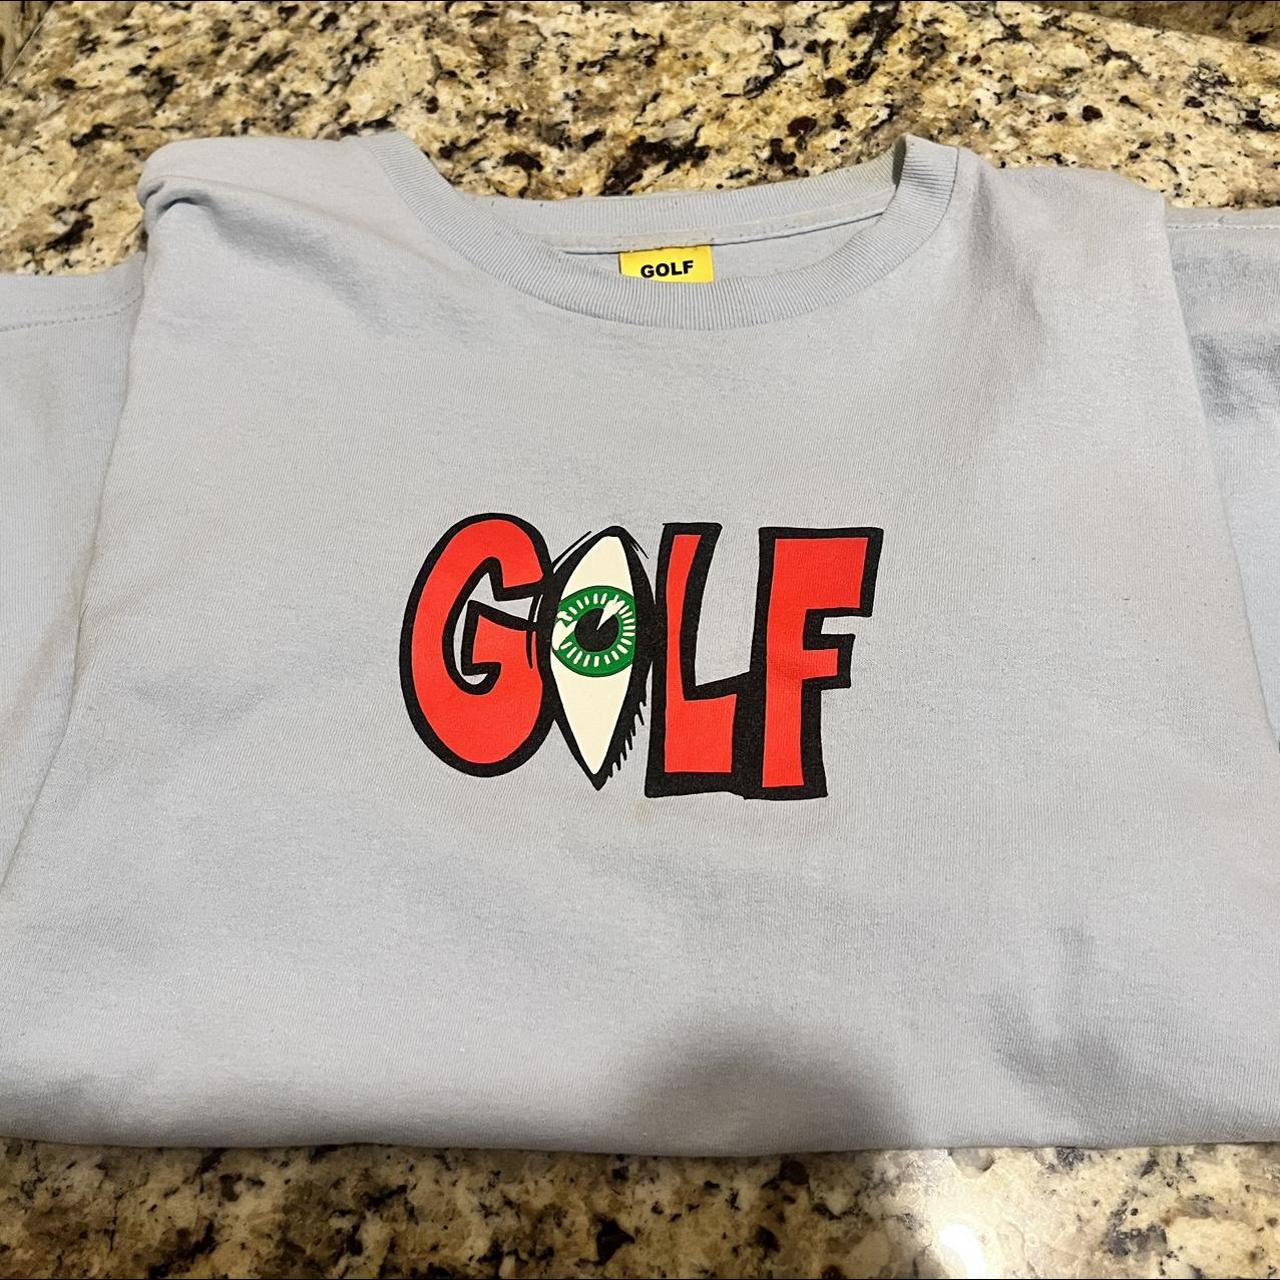 Golf wang shirt